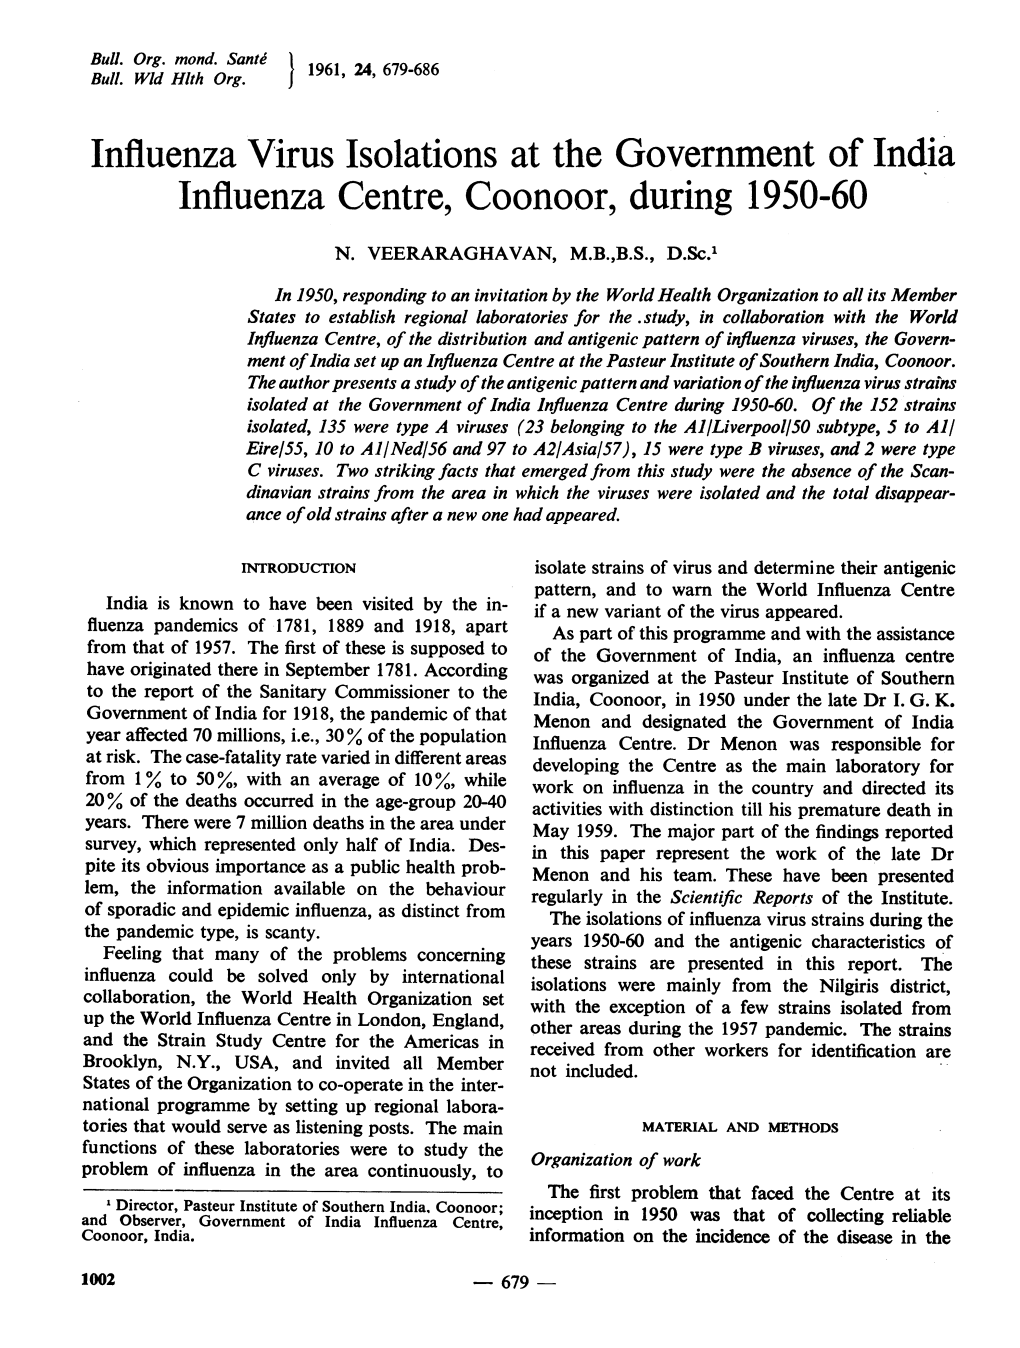 Influenza Centre, Coonoor, During 1950-60